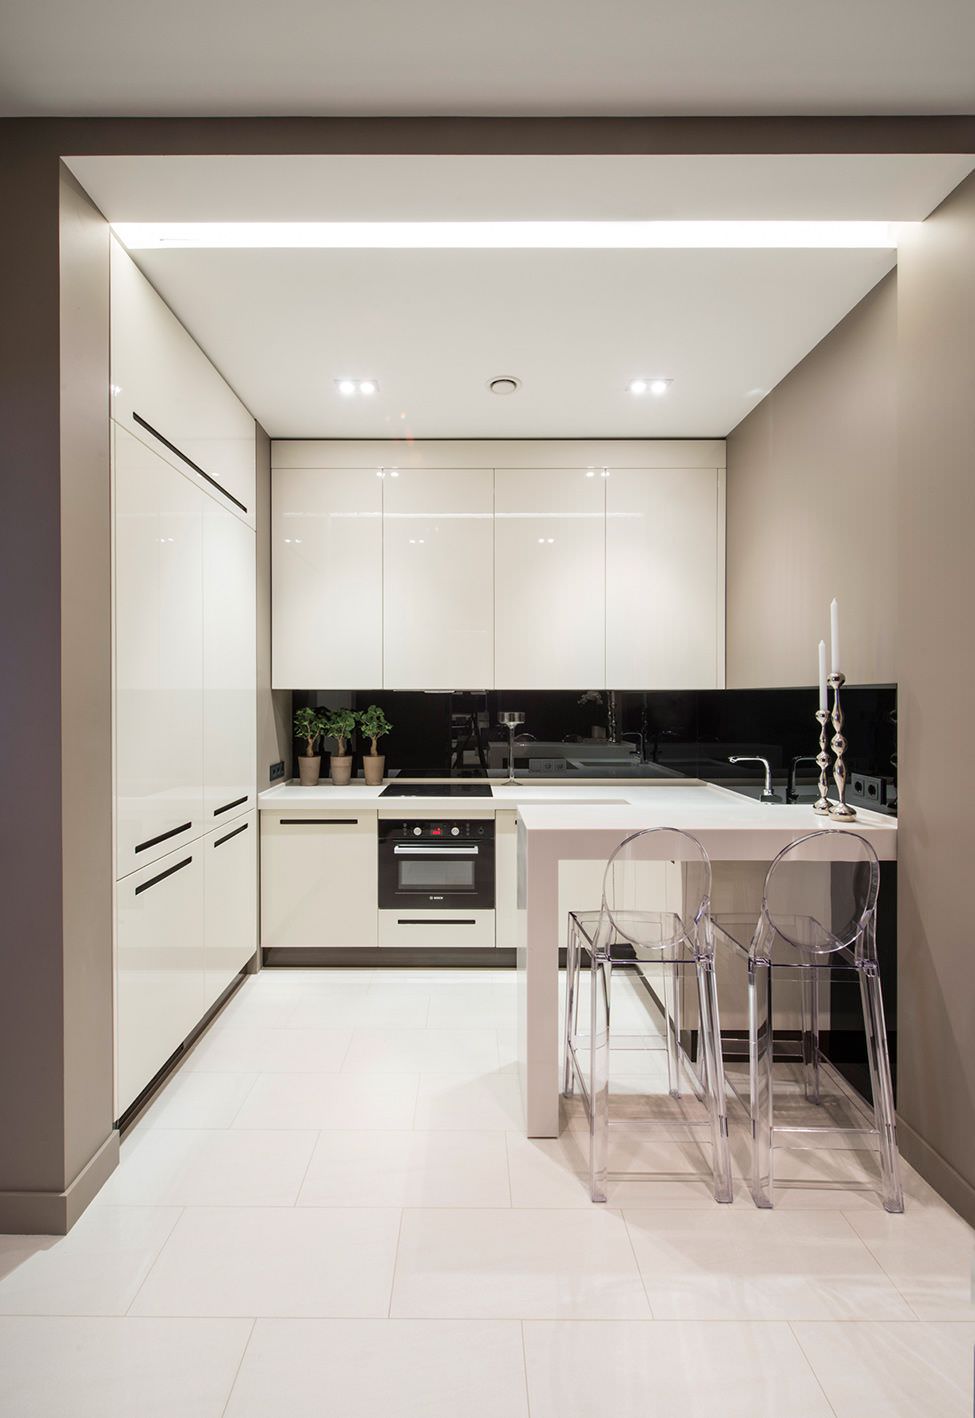 دکوراسیون آشپزخانه کوچک و مدرن با کابینت های سفید که به جای آویز، در آن چراغ سقفی توکار به کار رفته است